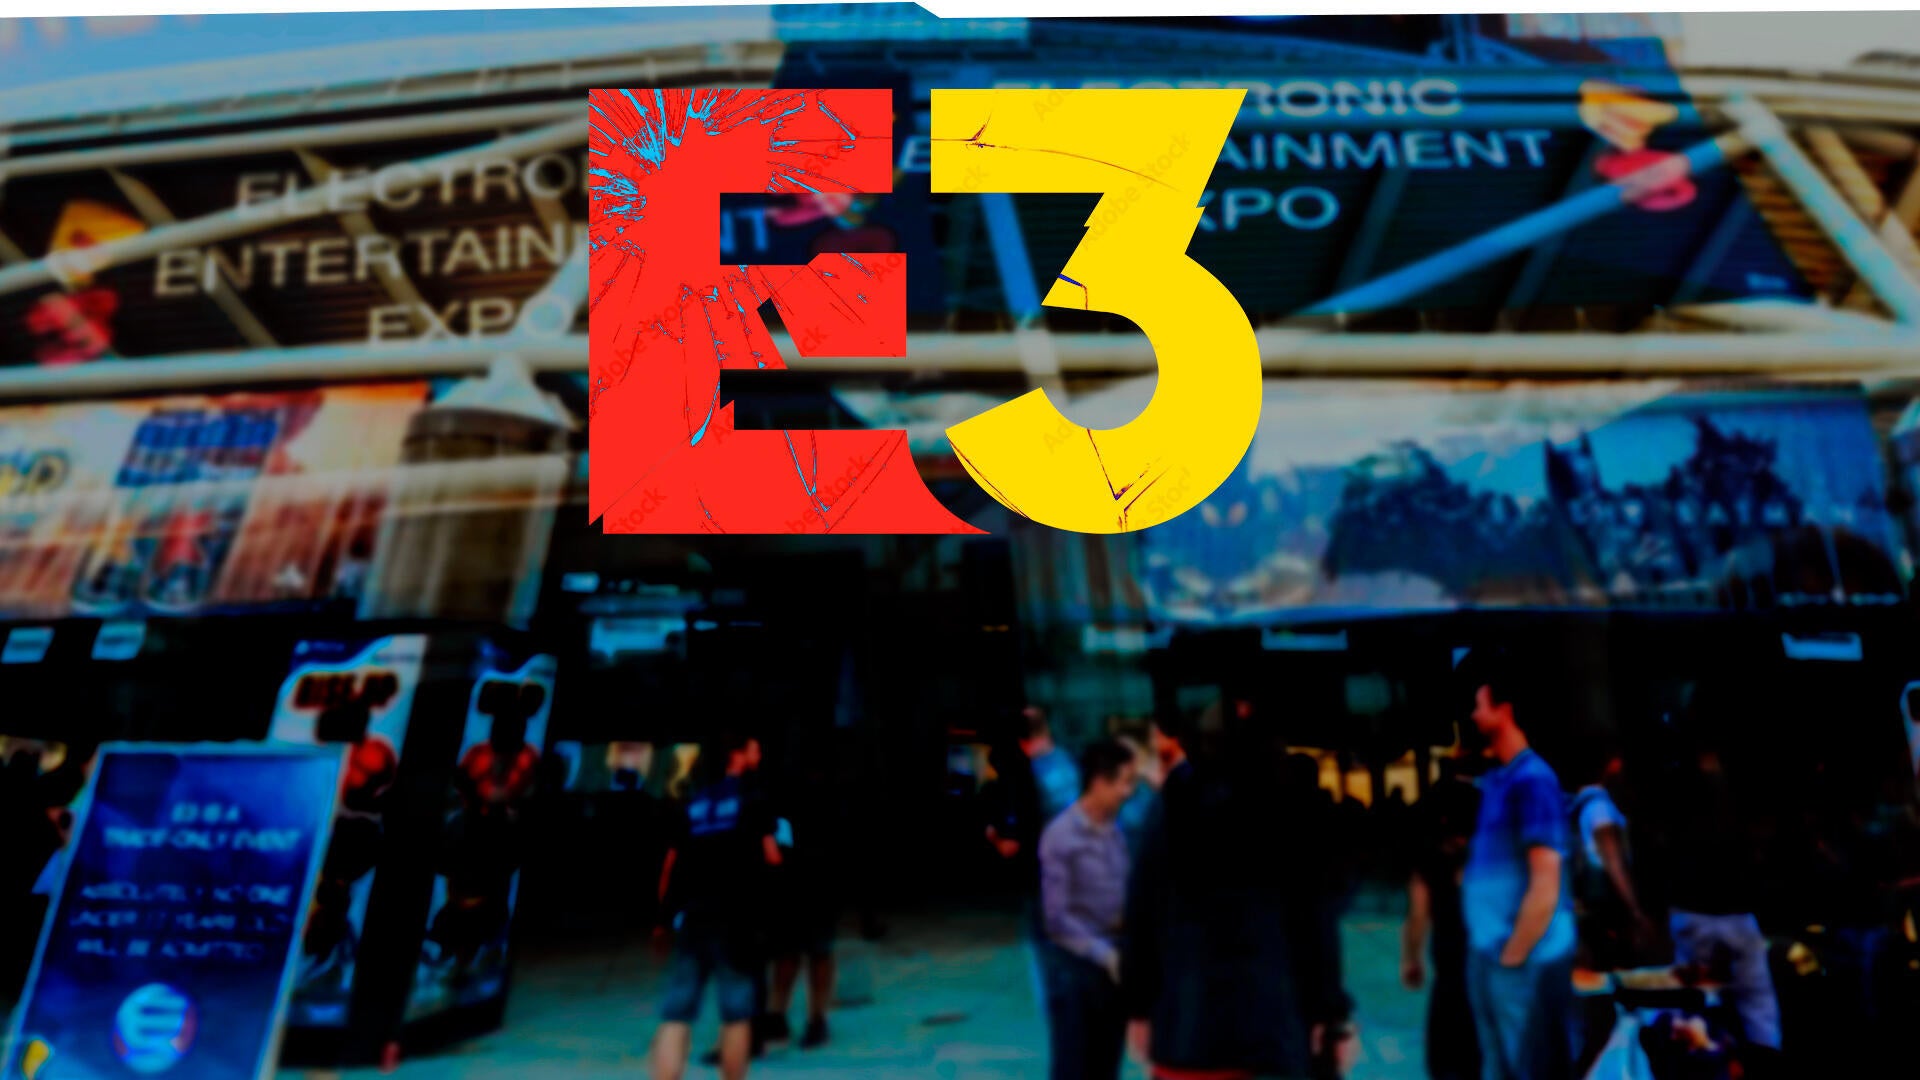 La E3 ha llegado a su fin | #TuDosisGeek